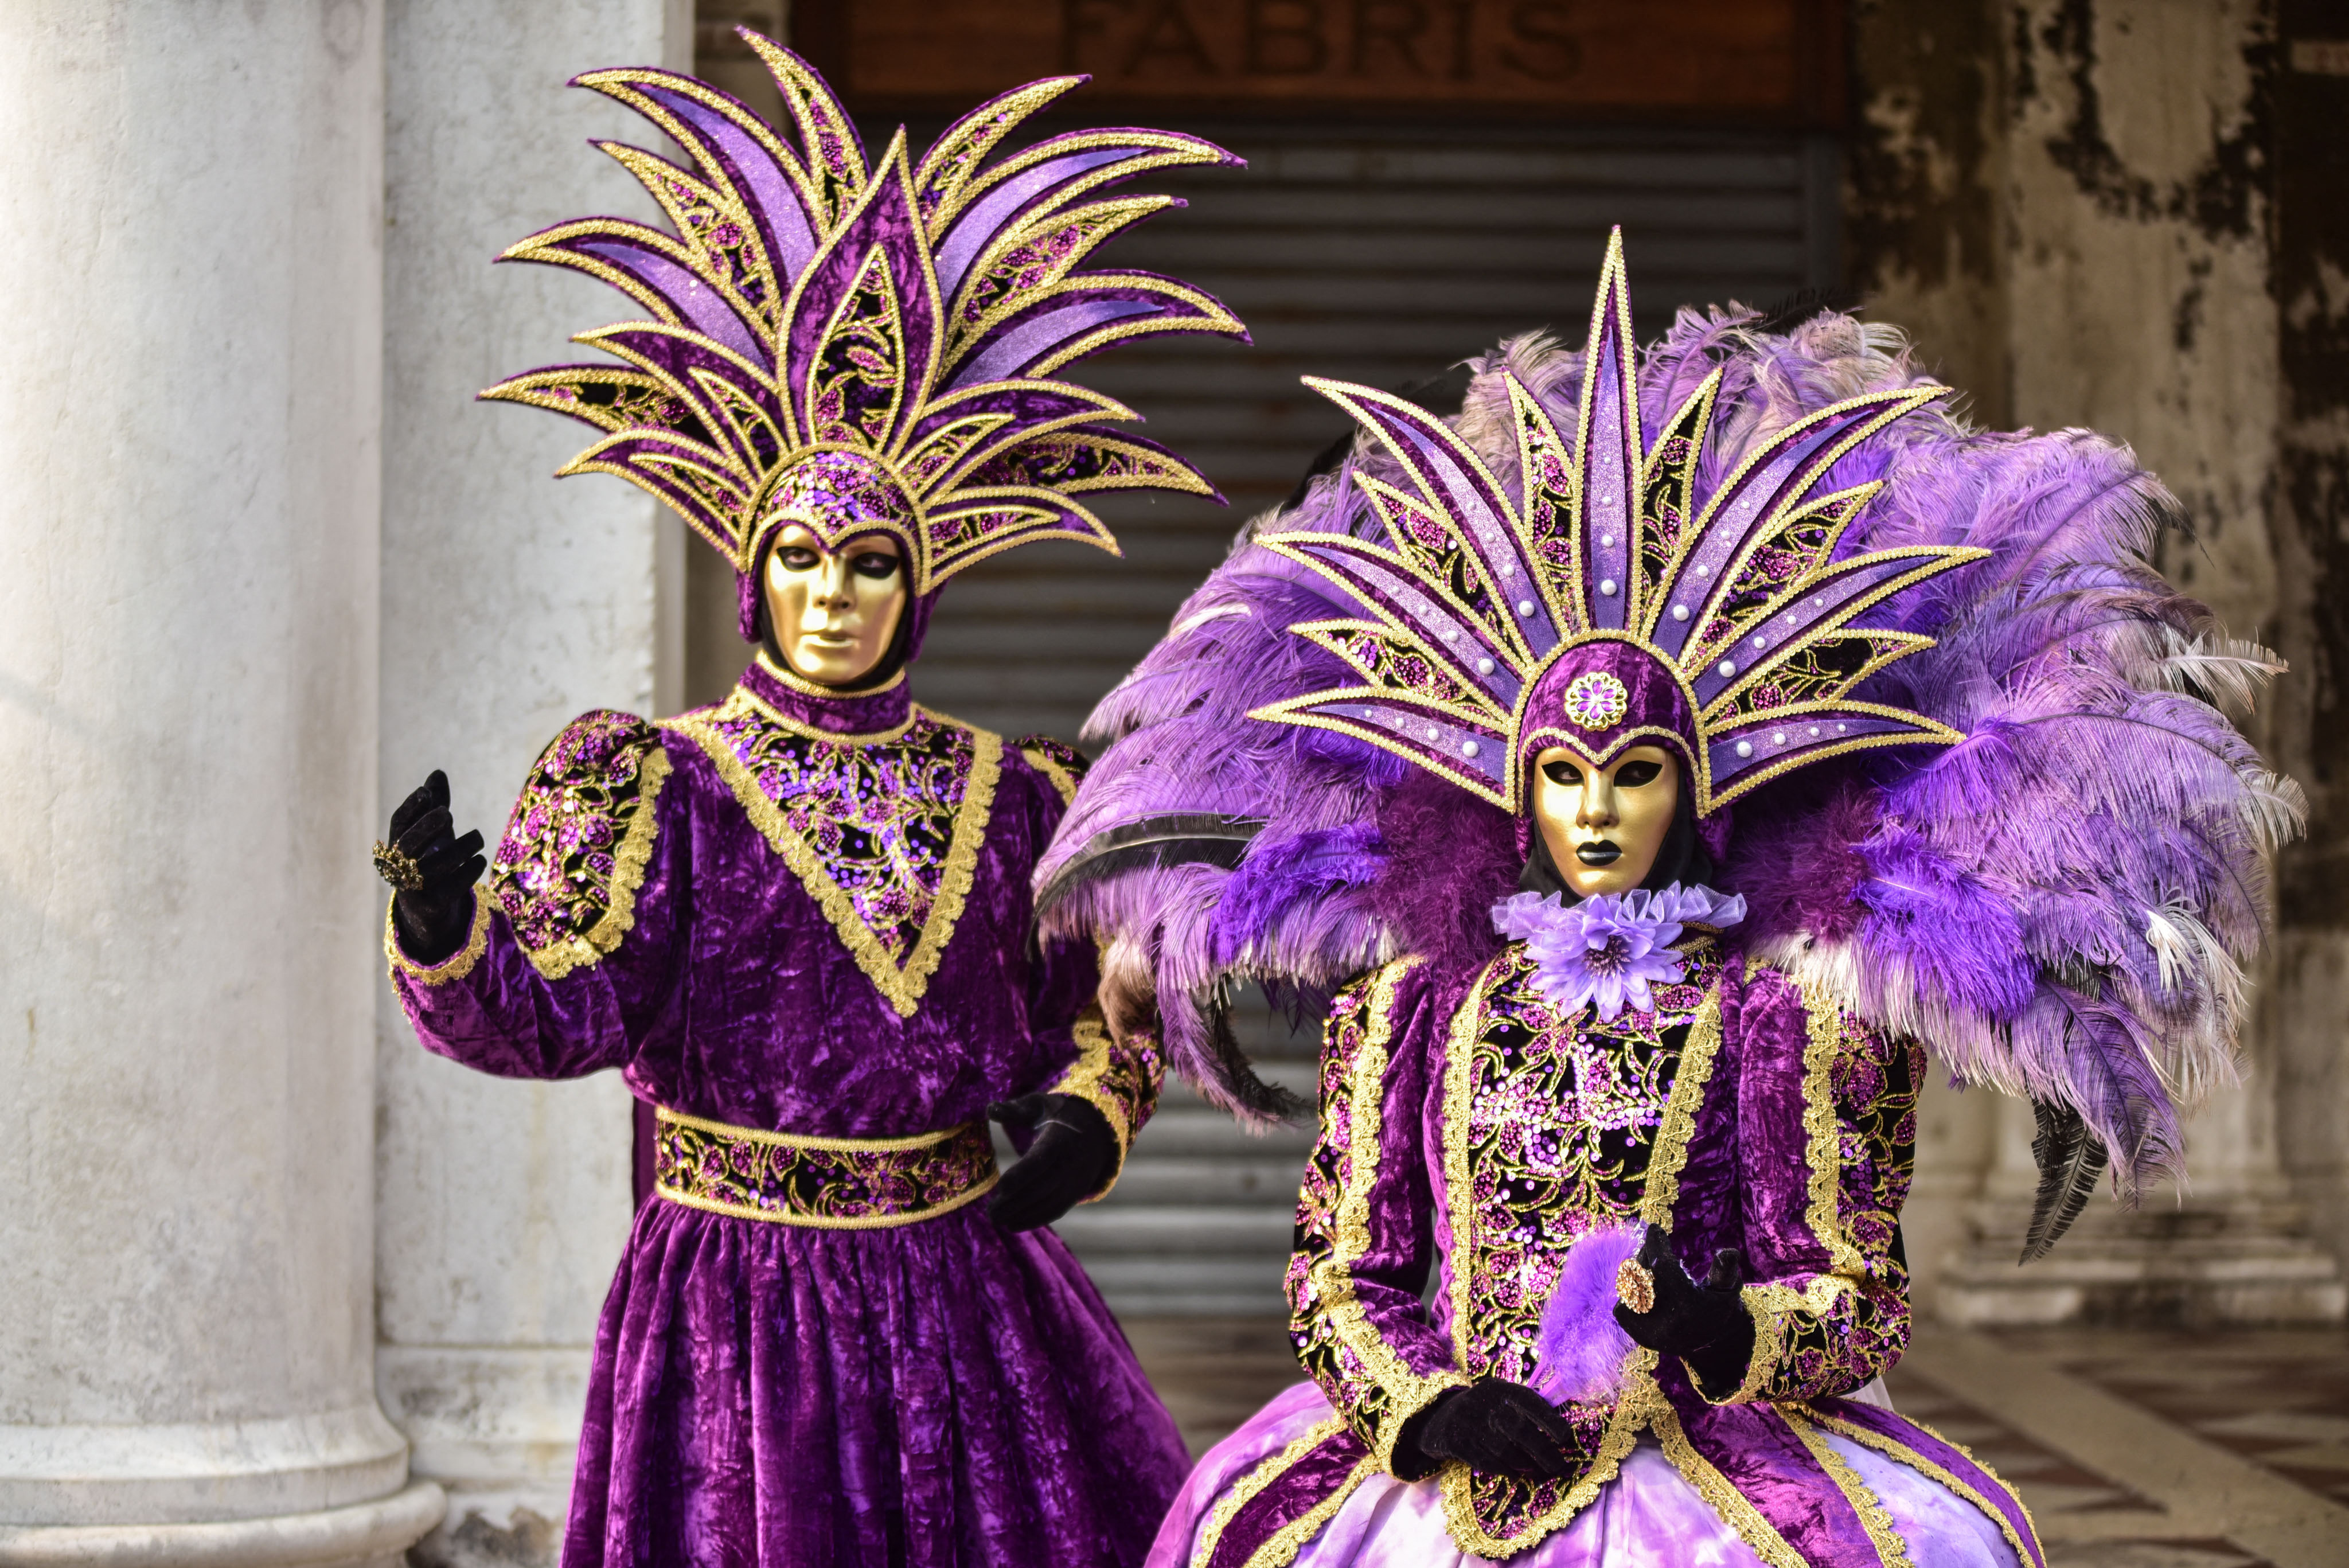 Les incroyables costumes du carnaval de Venise - Ça m'interesse